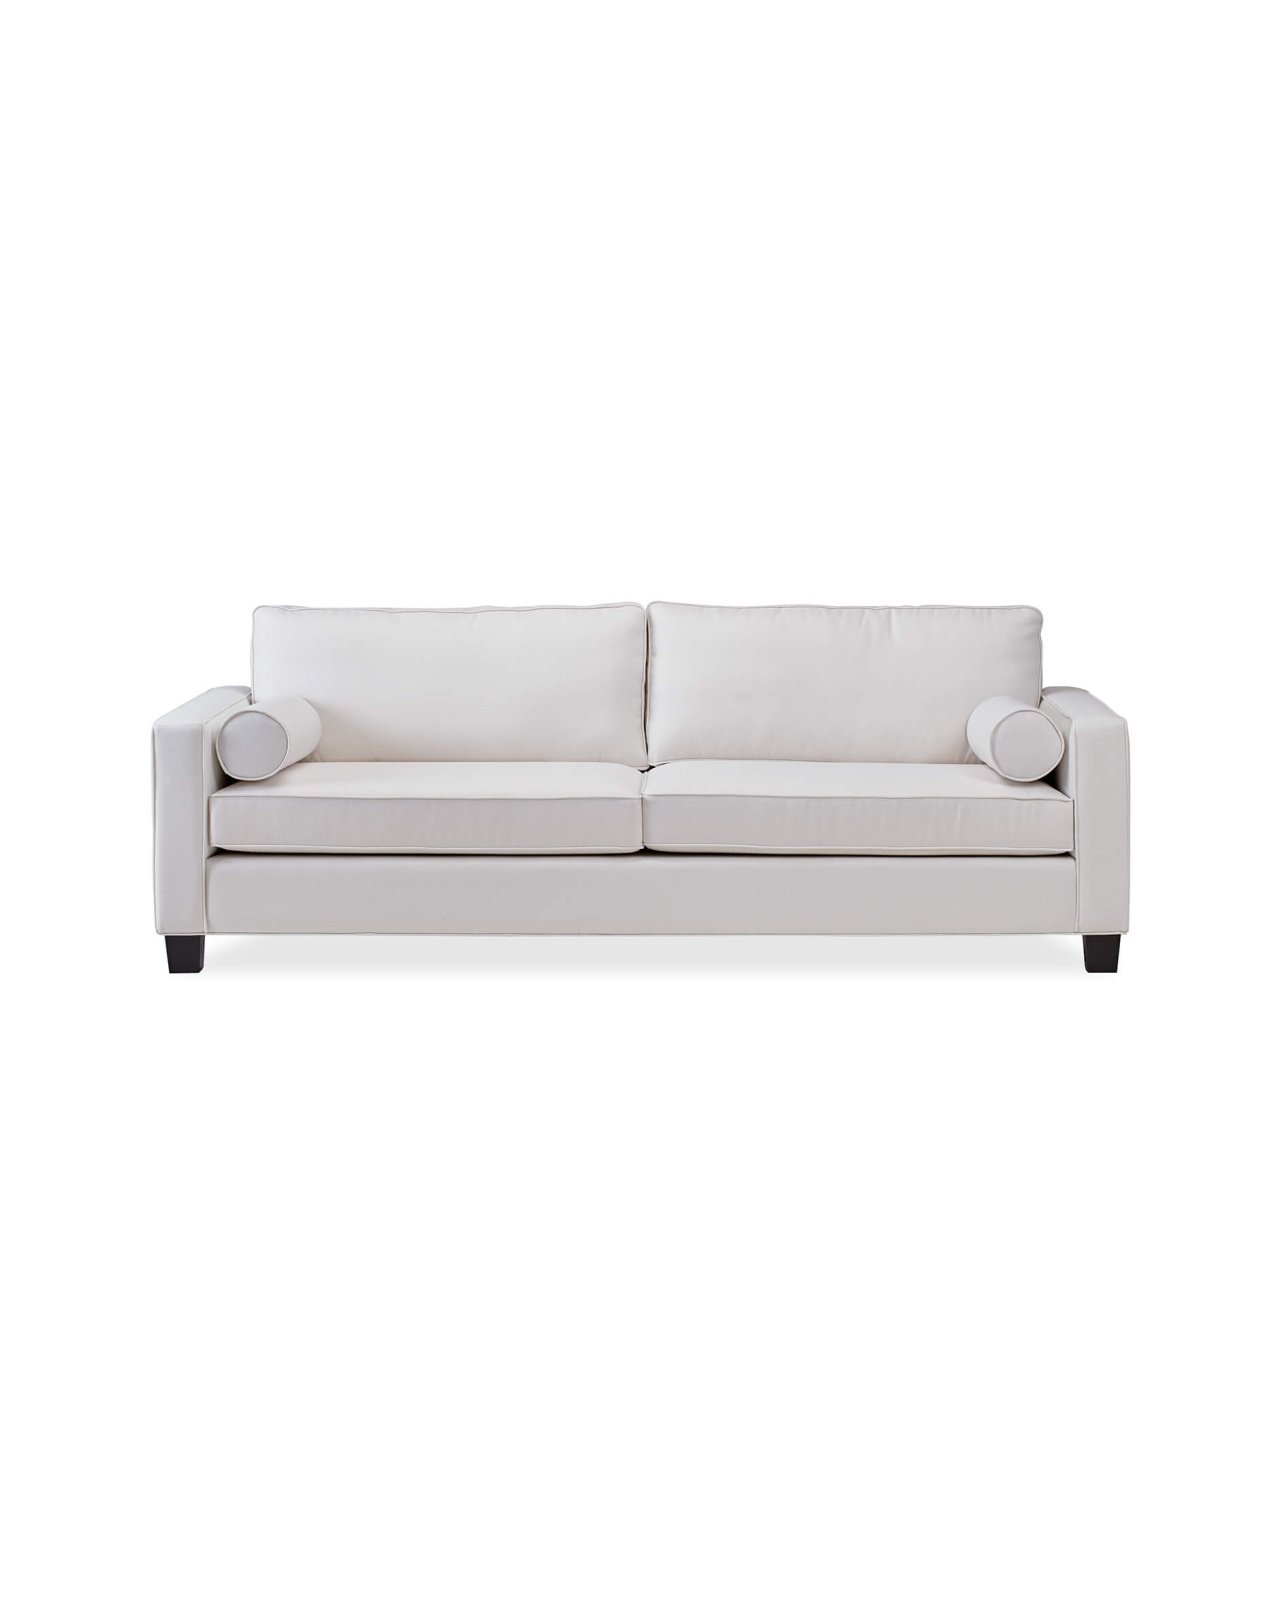 Plaza soffa off-white